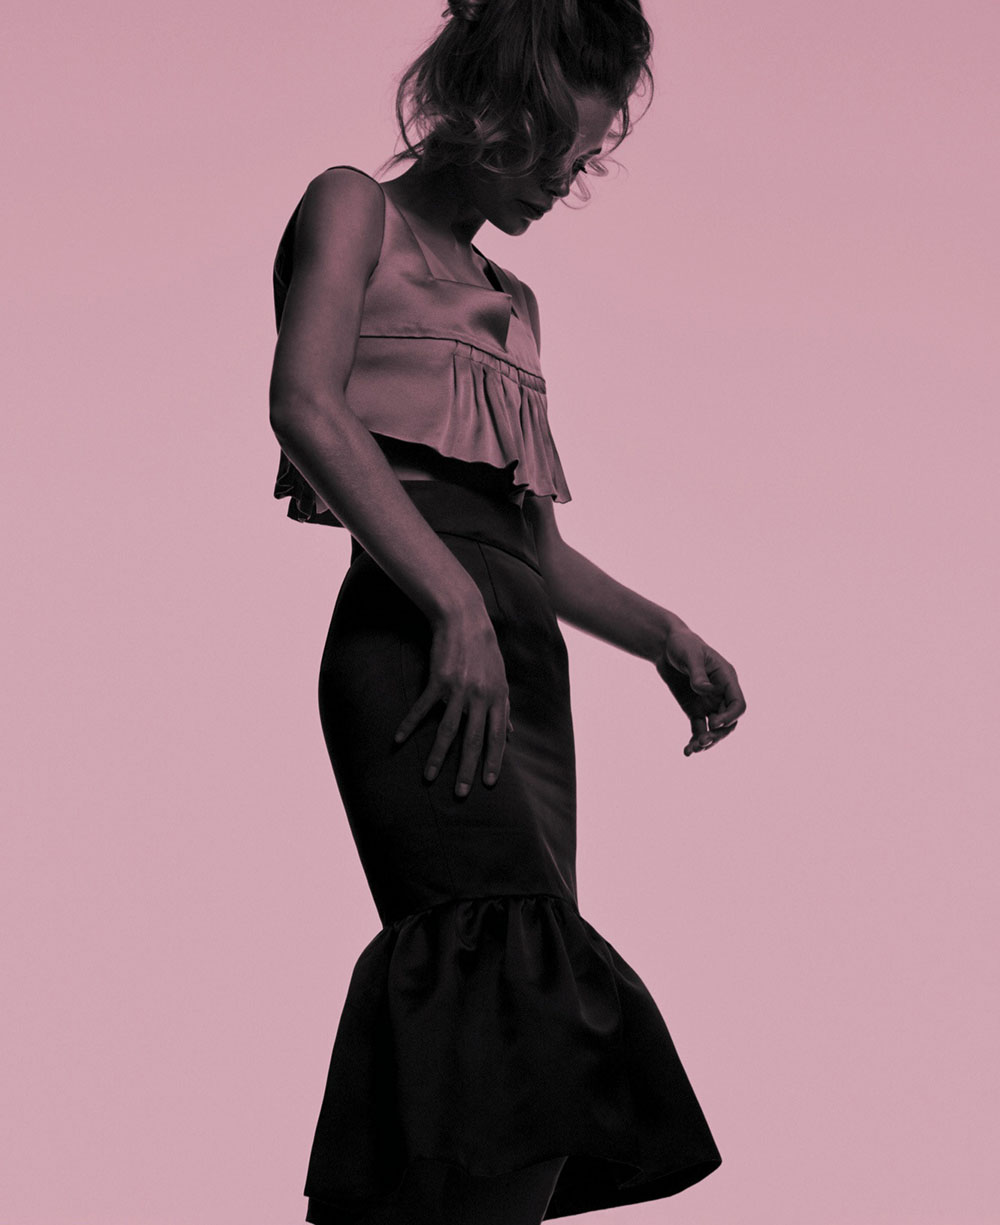 Doutzen Kroes by Chris Colls for Elle US March 2020